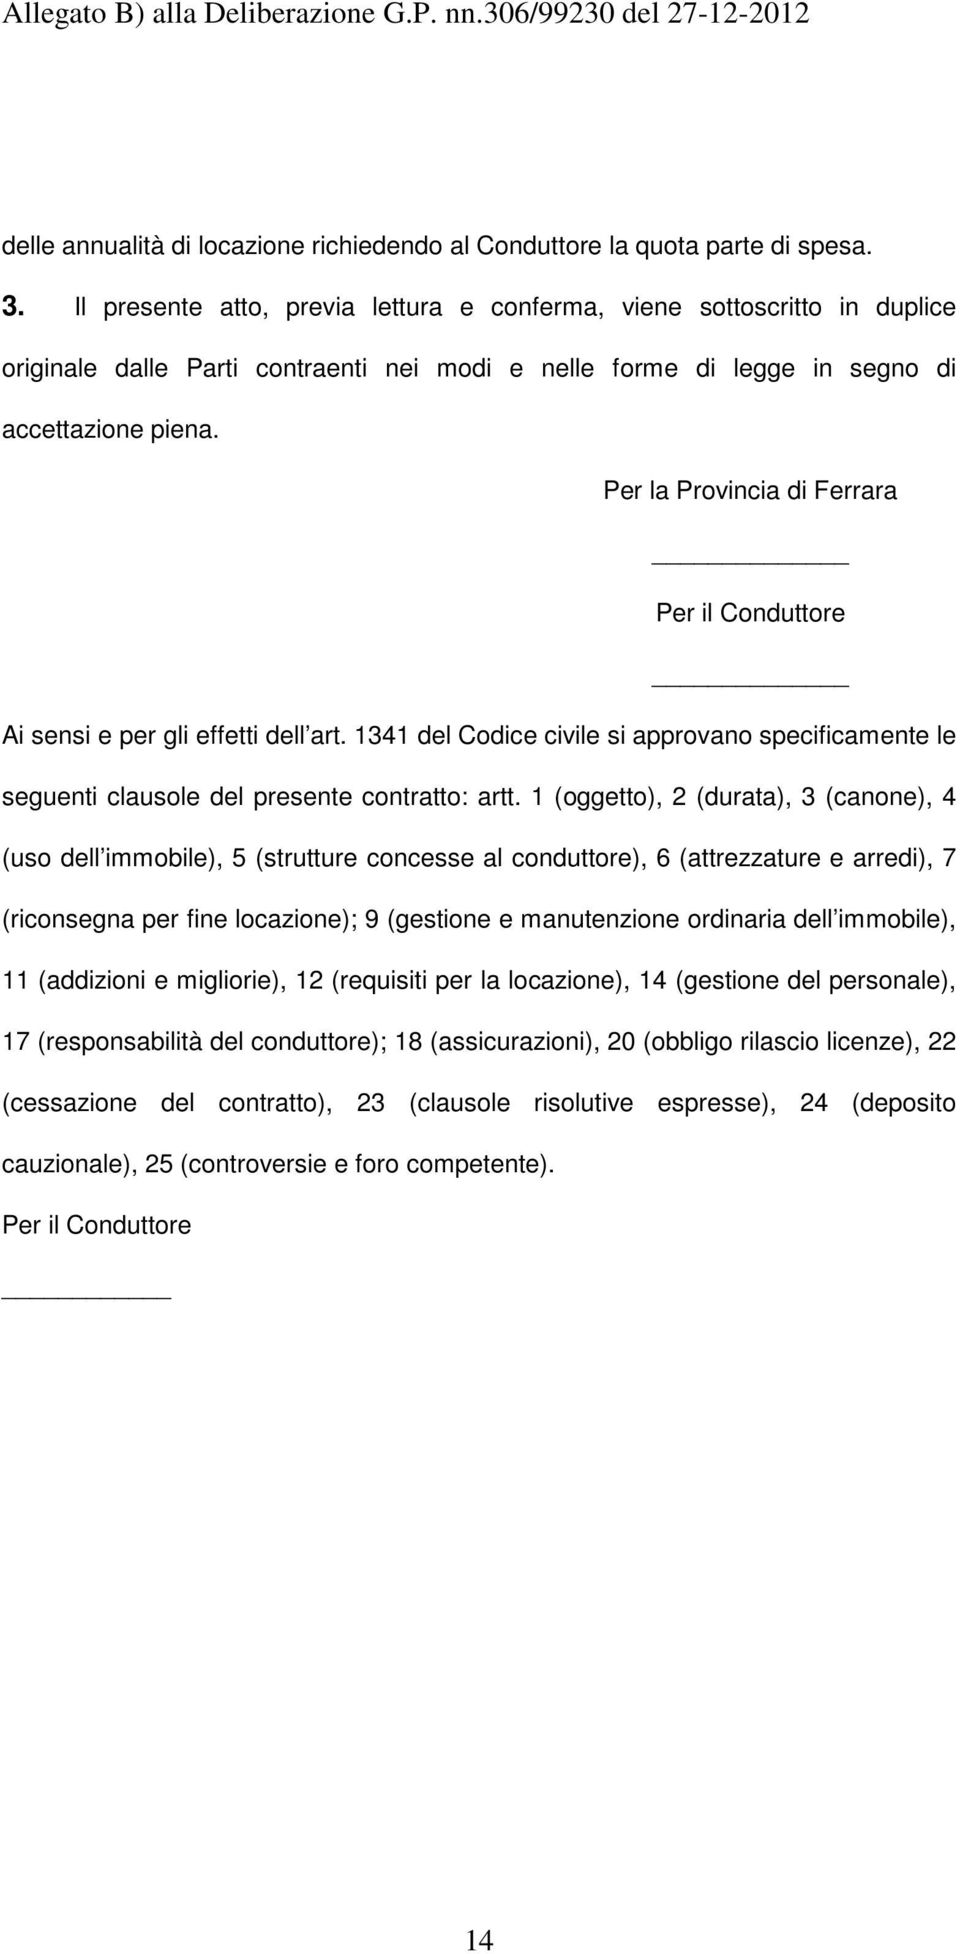 Per la Provincia di Ferrara Per il Conduttore Ai sensi e per gli effetti dell art. 1341 del Codice civile si approvano specificamente le seguenti clausole del presente contratto: artt.